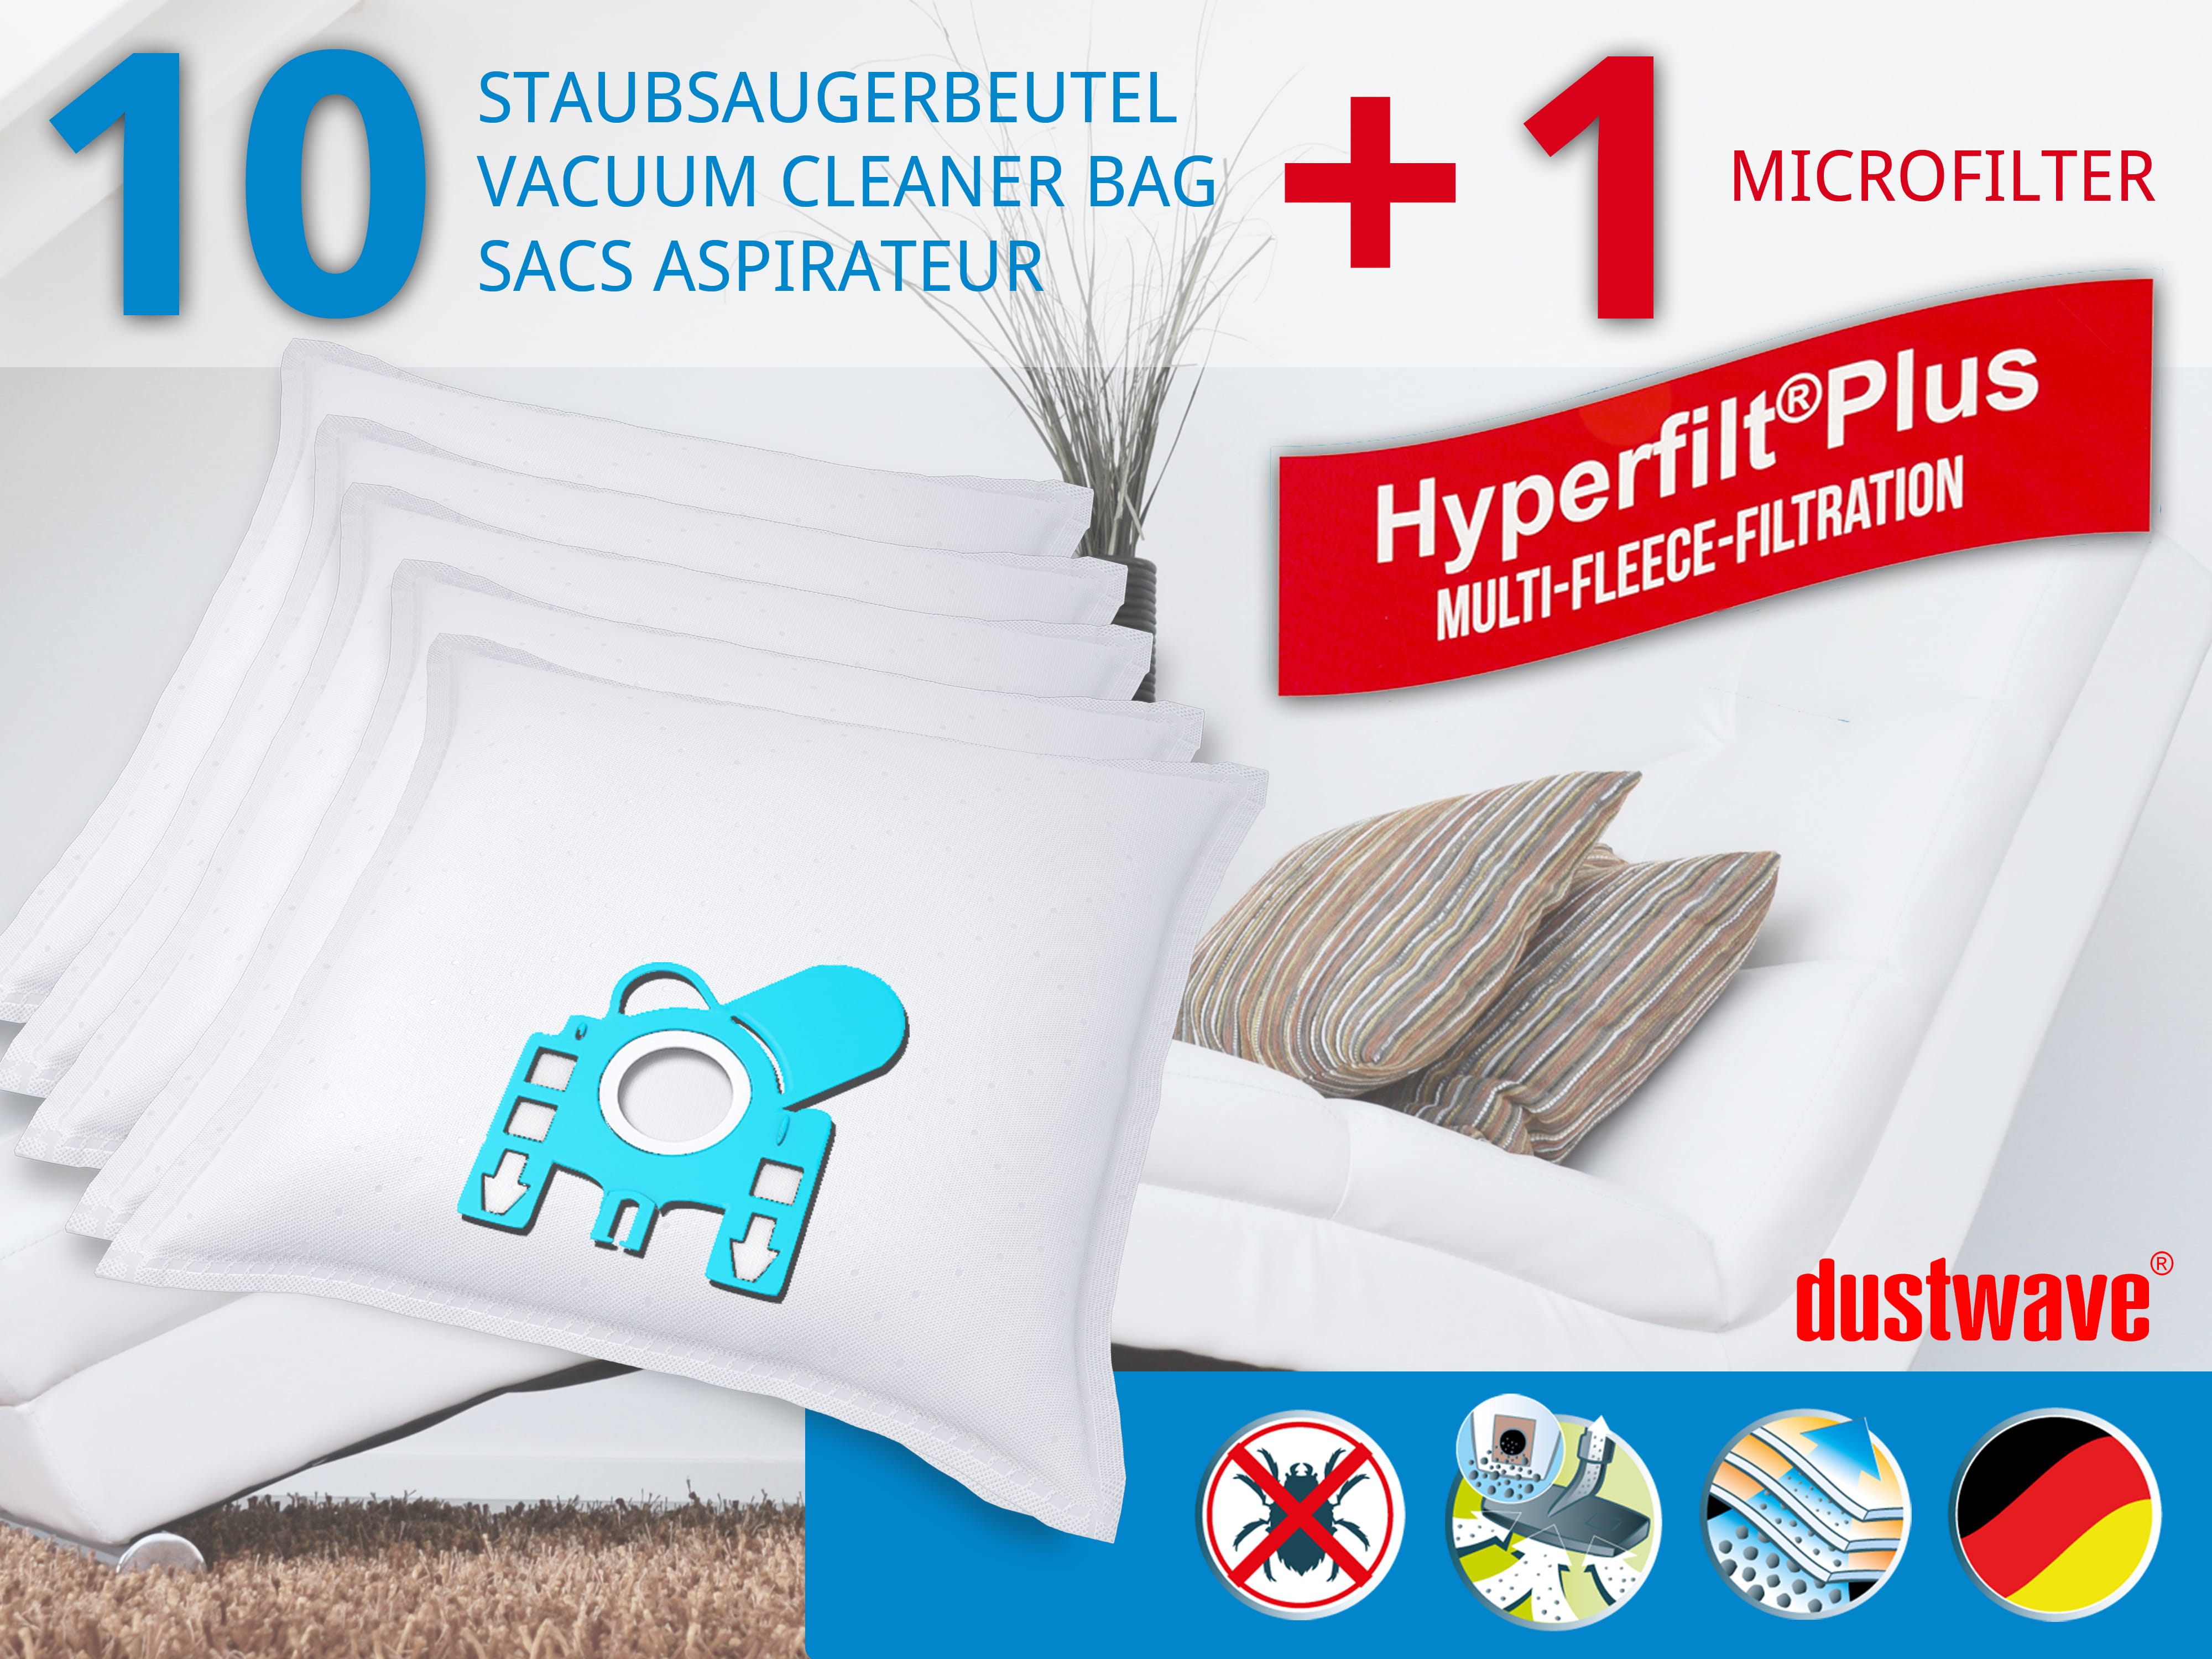 Dustwave® 10 Staubsaugerbeutel für Hoover H 73 / H73 - hocheffizient, mehrlagiges Mikrovlies mit Hygieneverschluss - Made in Germany